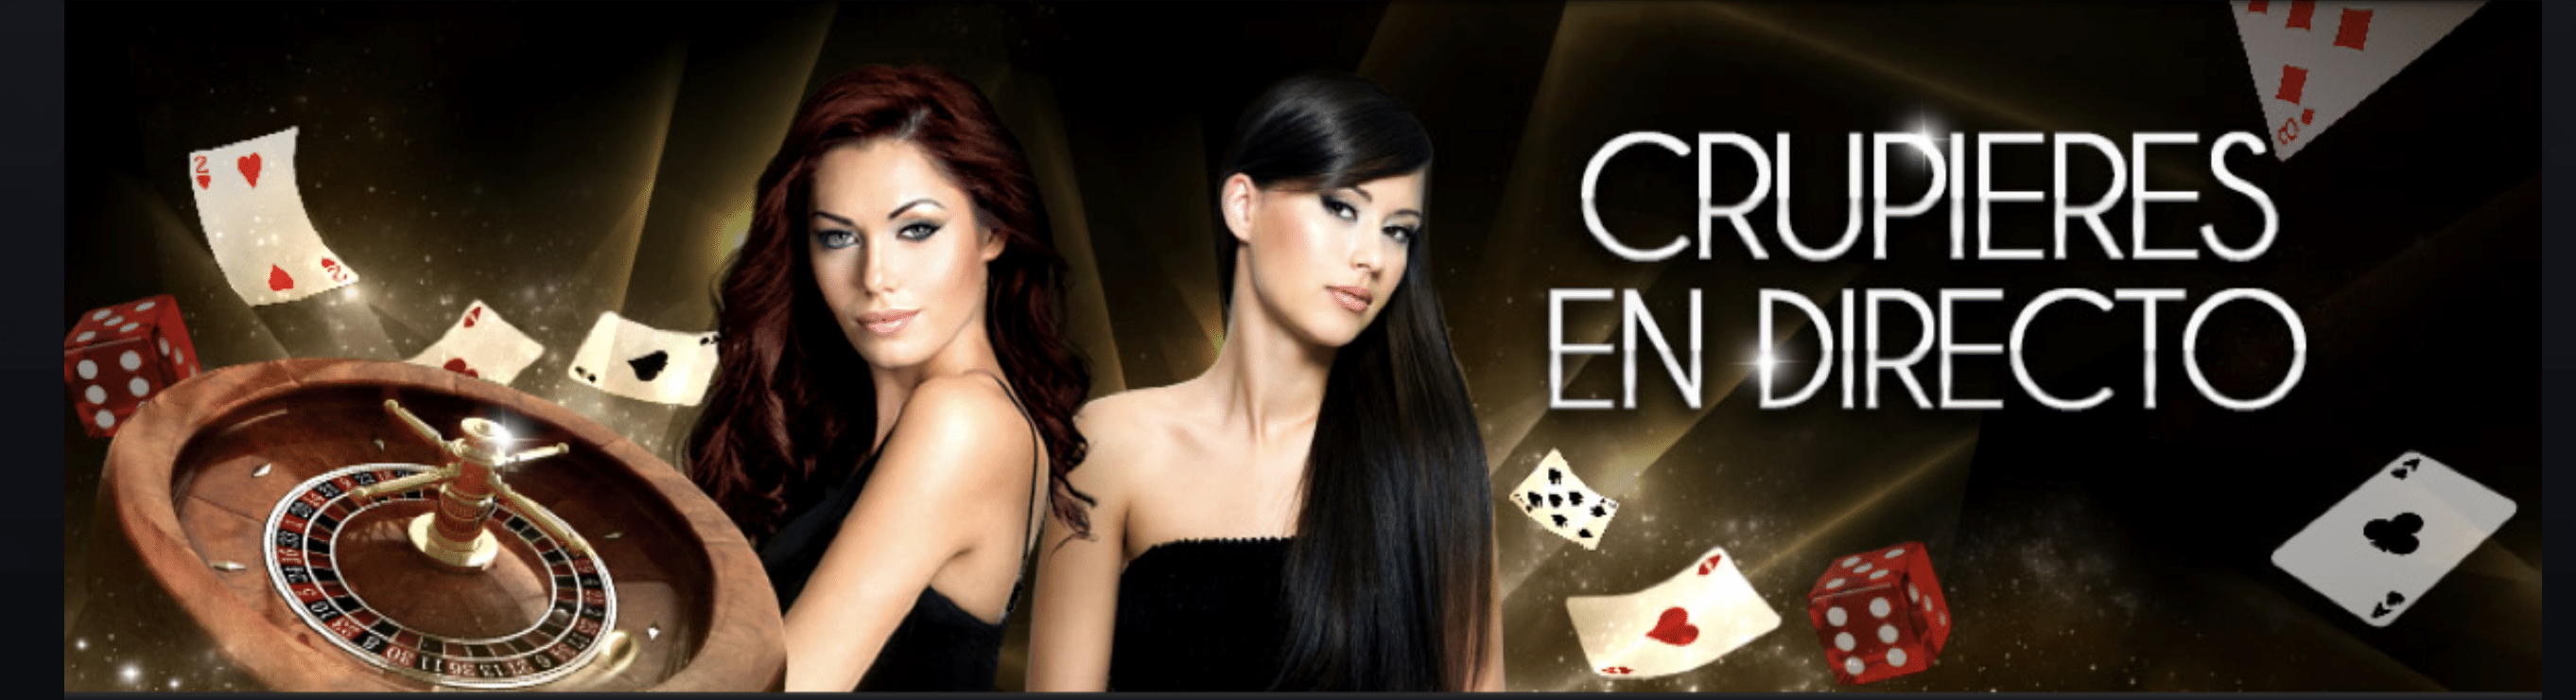 Mejor juego de poker online casino legales en Lisboa - 22562